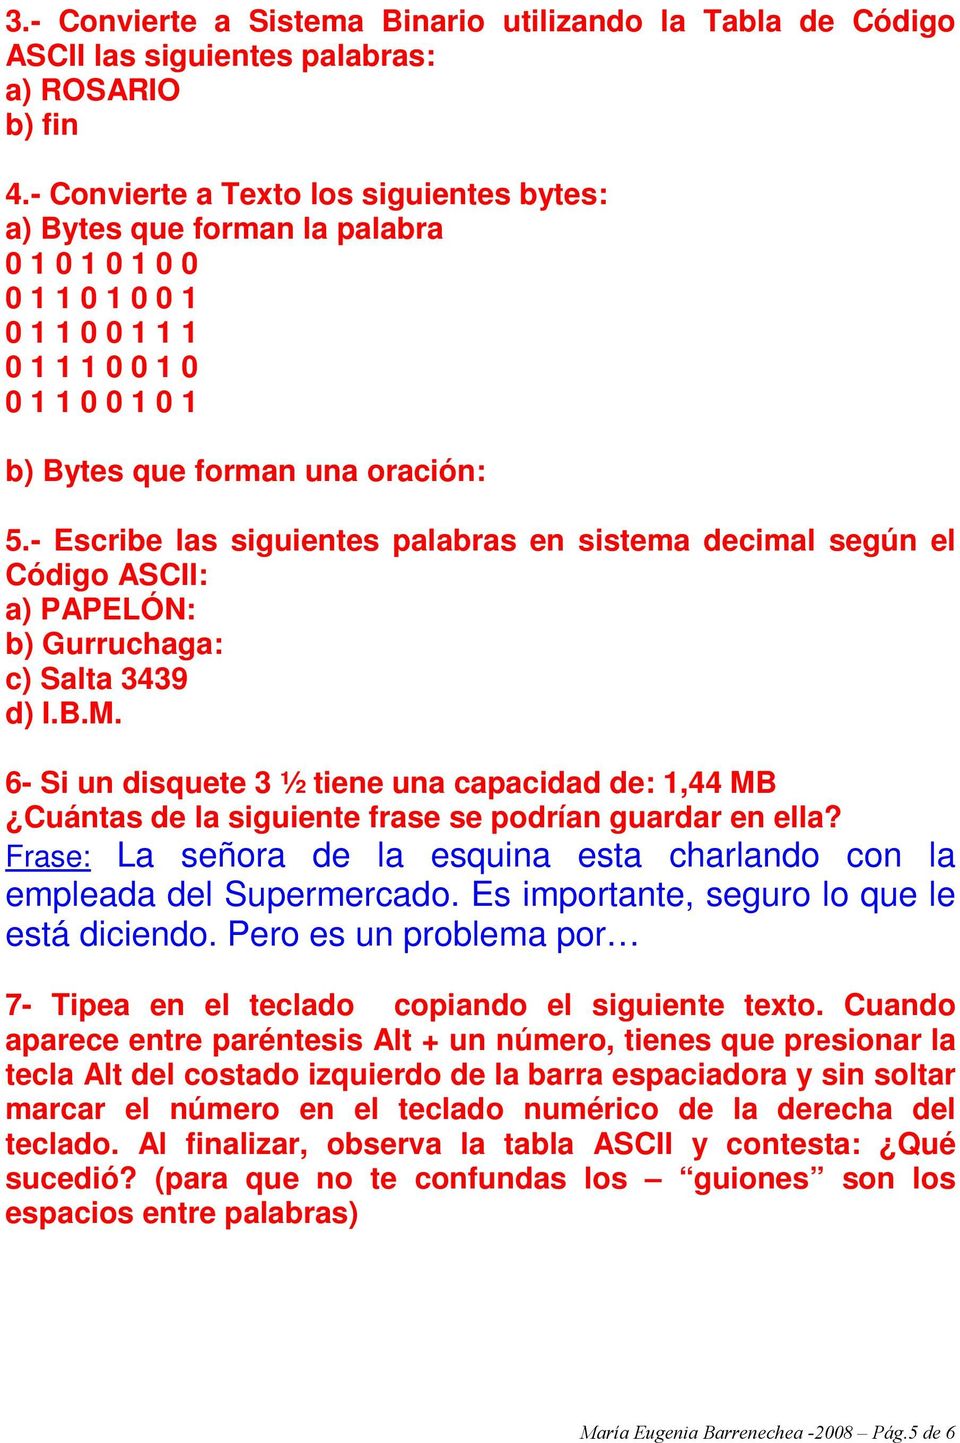 - Escribe las siguientes palabras en sistema decimal según el Código ASCII: a) PAPELÓN: b) Gurruchaga: c) Salta 3439 d) I.B.M.